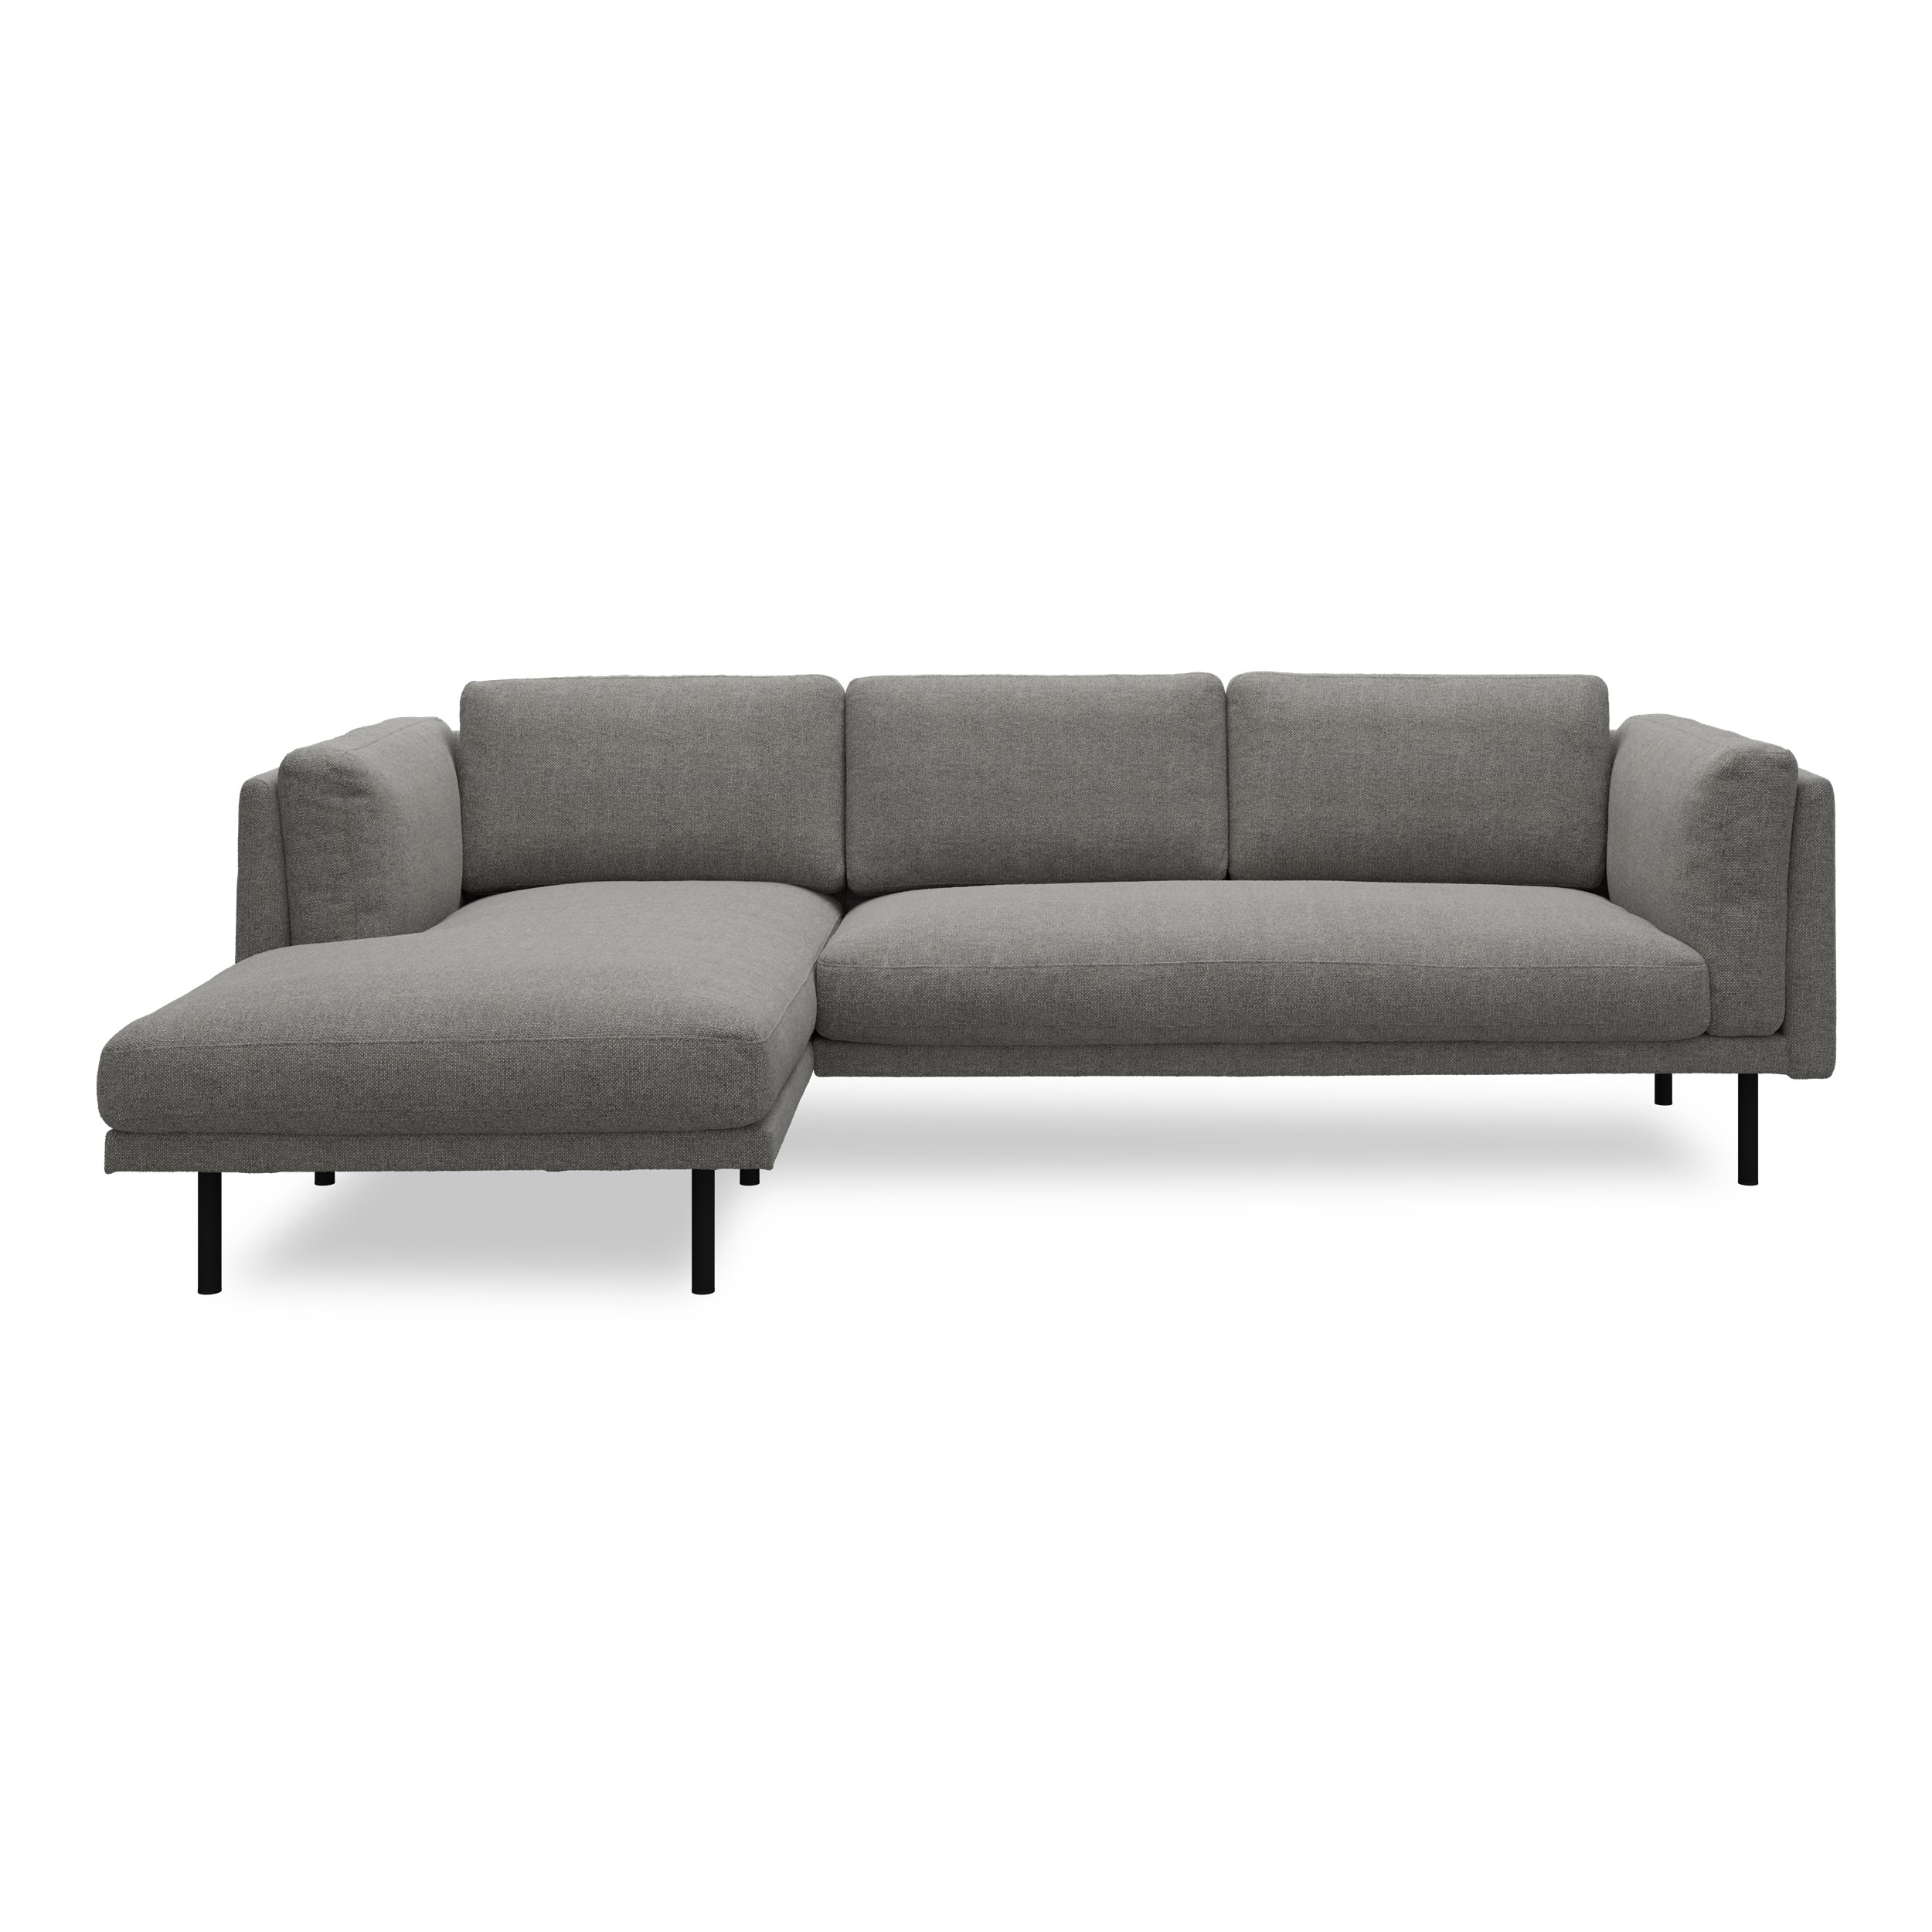 Nebel vänstervänd soffa med schäslong - Rate 68 Dark grey textil och svart pulverlackerad metall